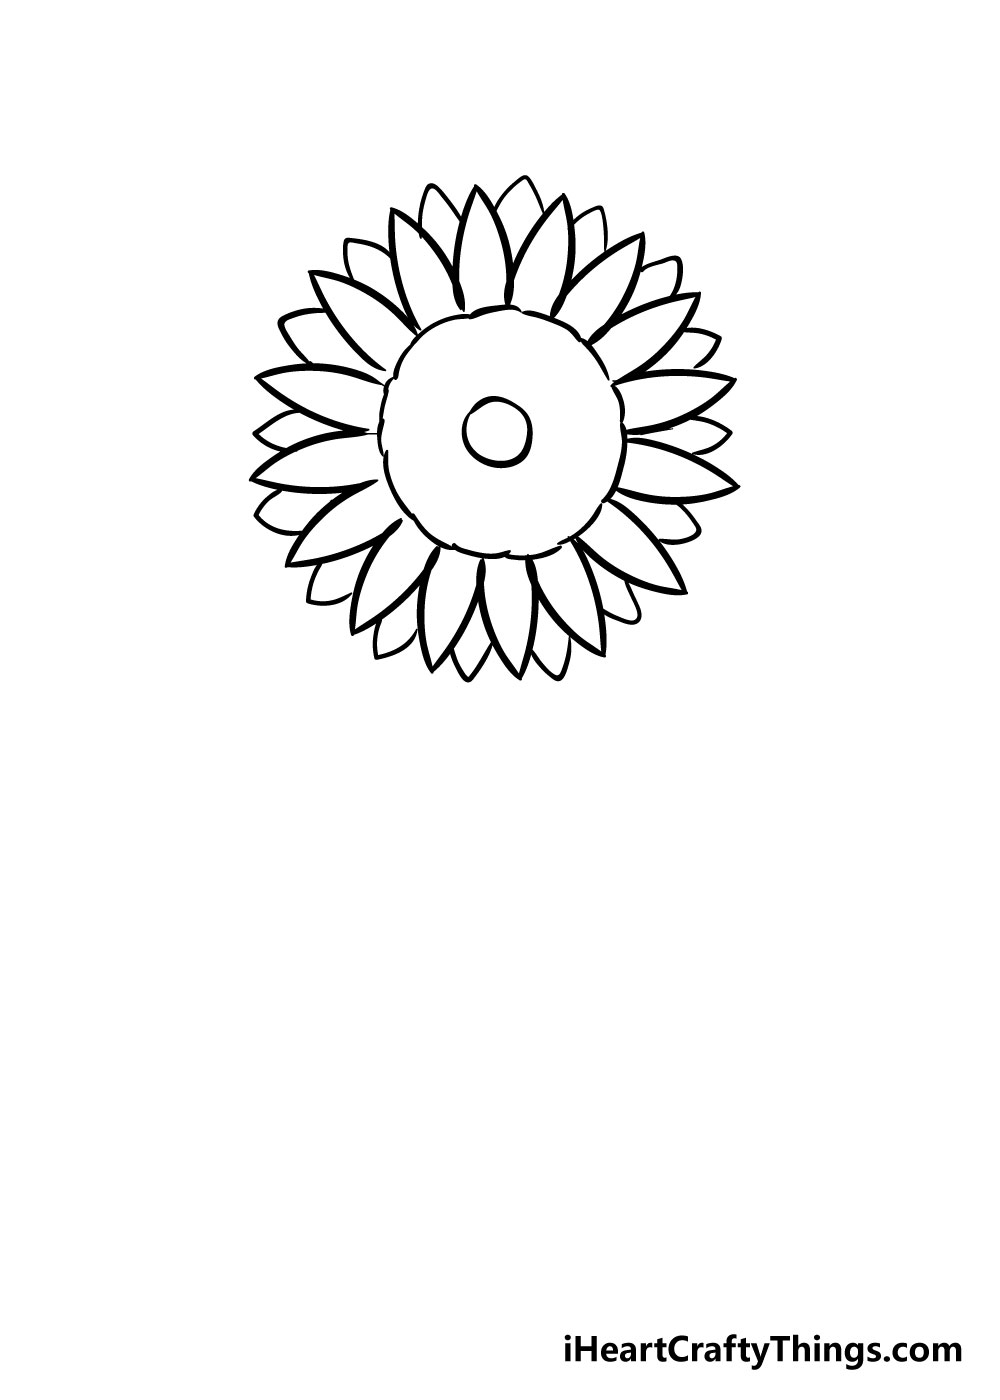 How to draw Sunflower 4 - Hướng dẫn chi tiết cách vẽ hoa hướng dương đơn giản gồm 10 bước cơ bản